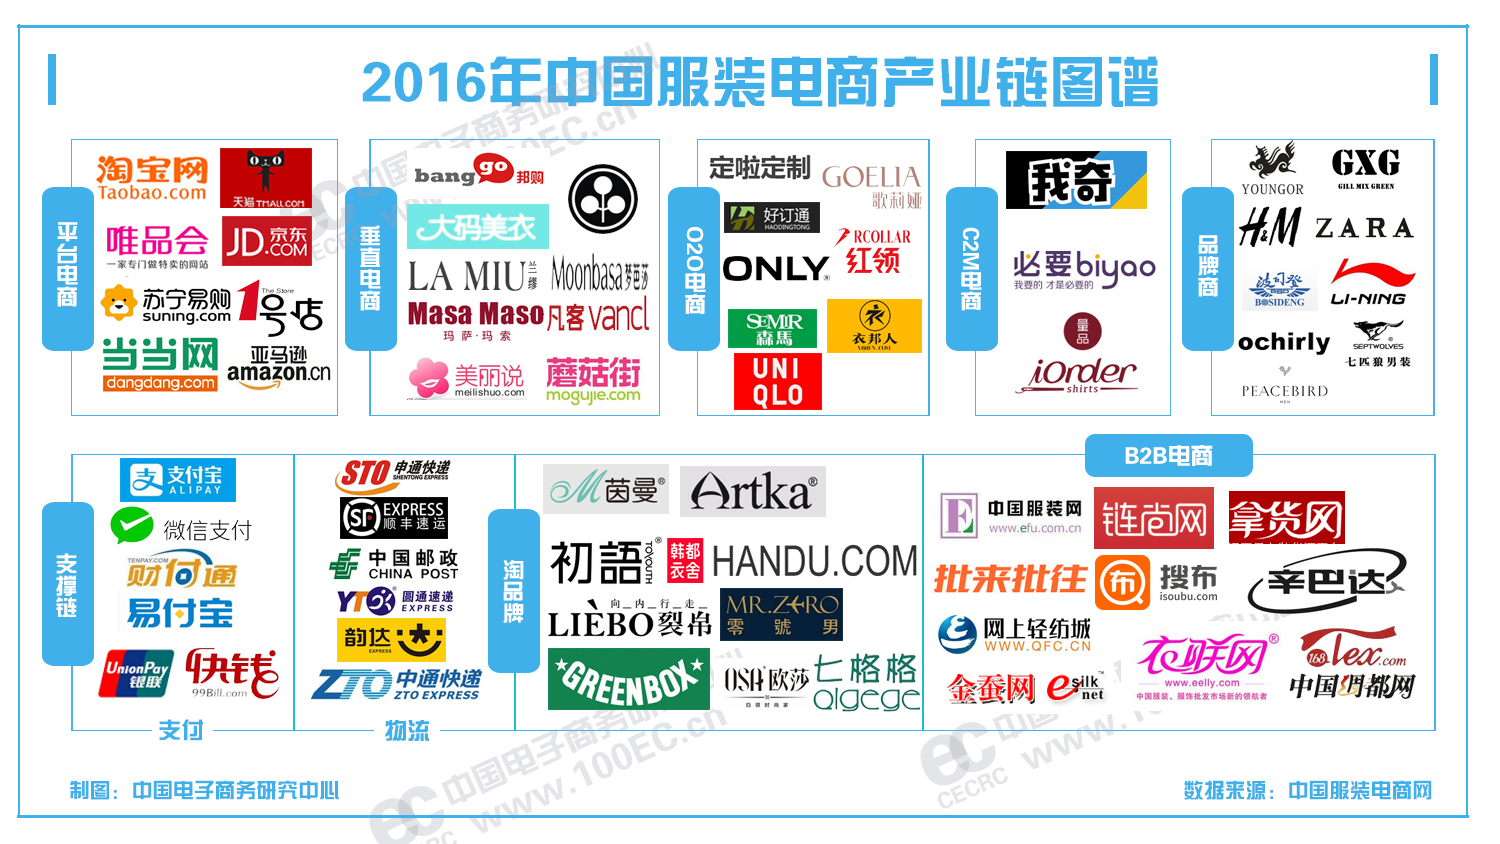 2015-2016年度中国服装电商行业报告发布1.png